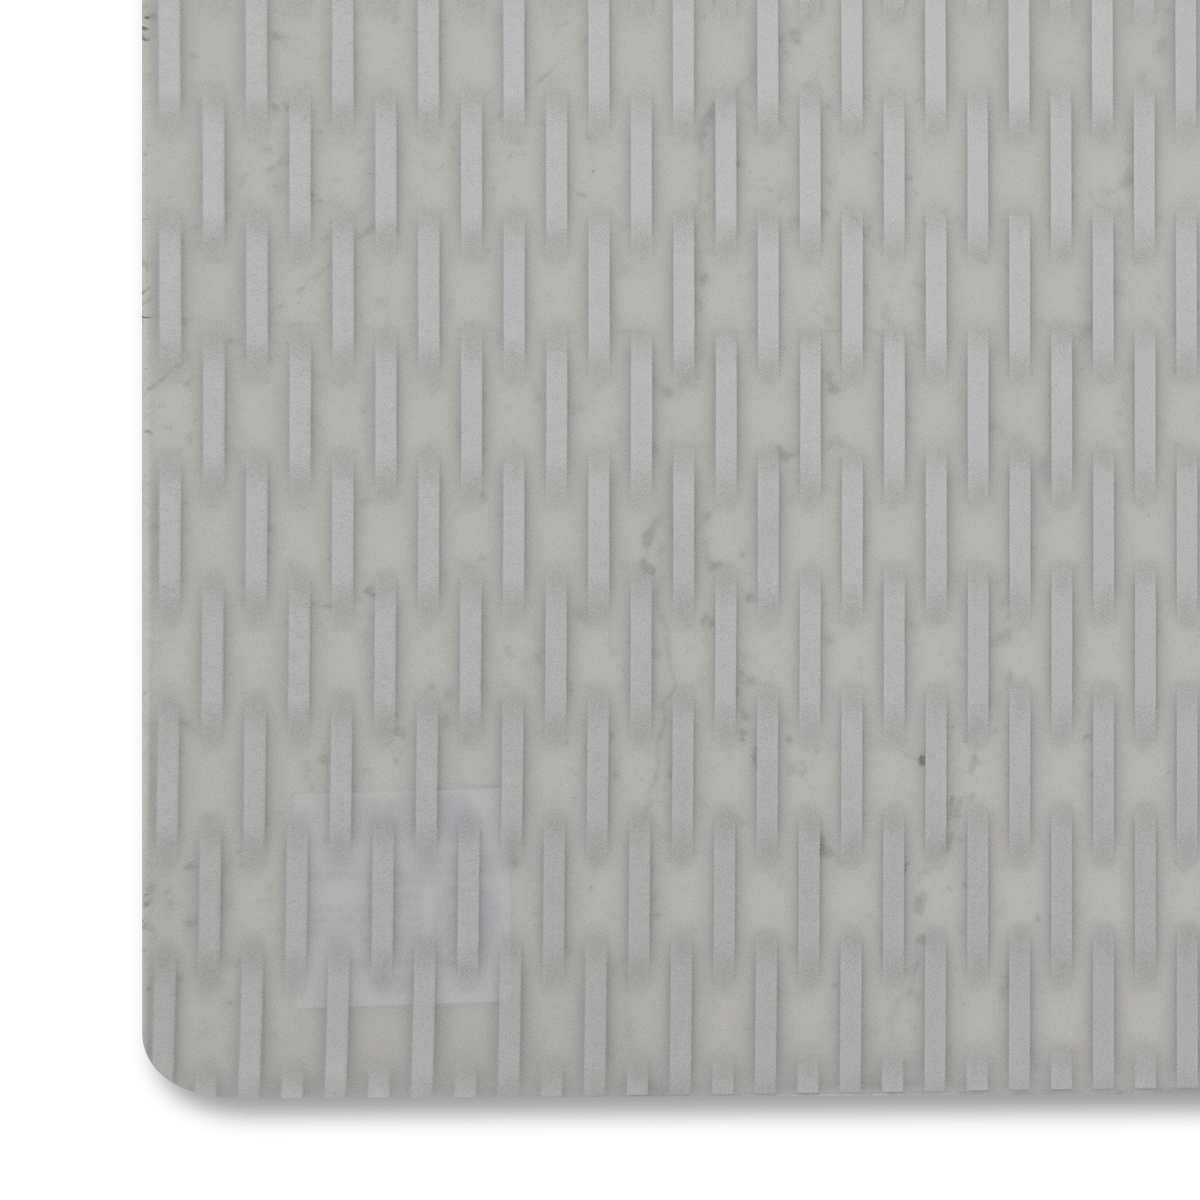 Mantel Individual 43.5 X 28.5 Cm Blanco/plateado | Manteles Individuales | decoracion